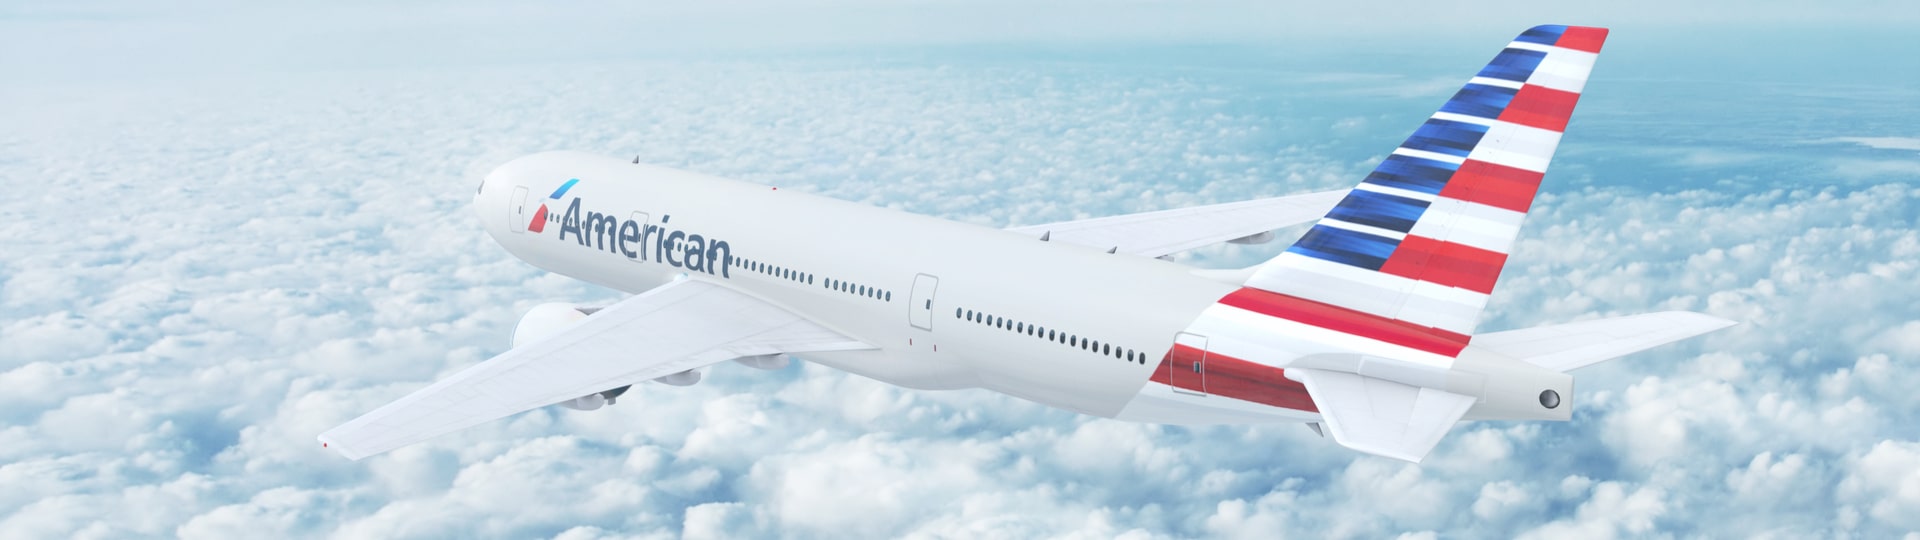 Aerolinky American Airlines díky zájmu o cestování o svátcích snížily ztrátu